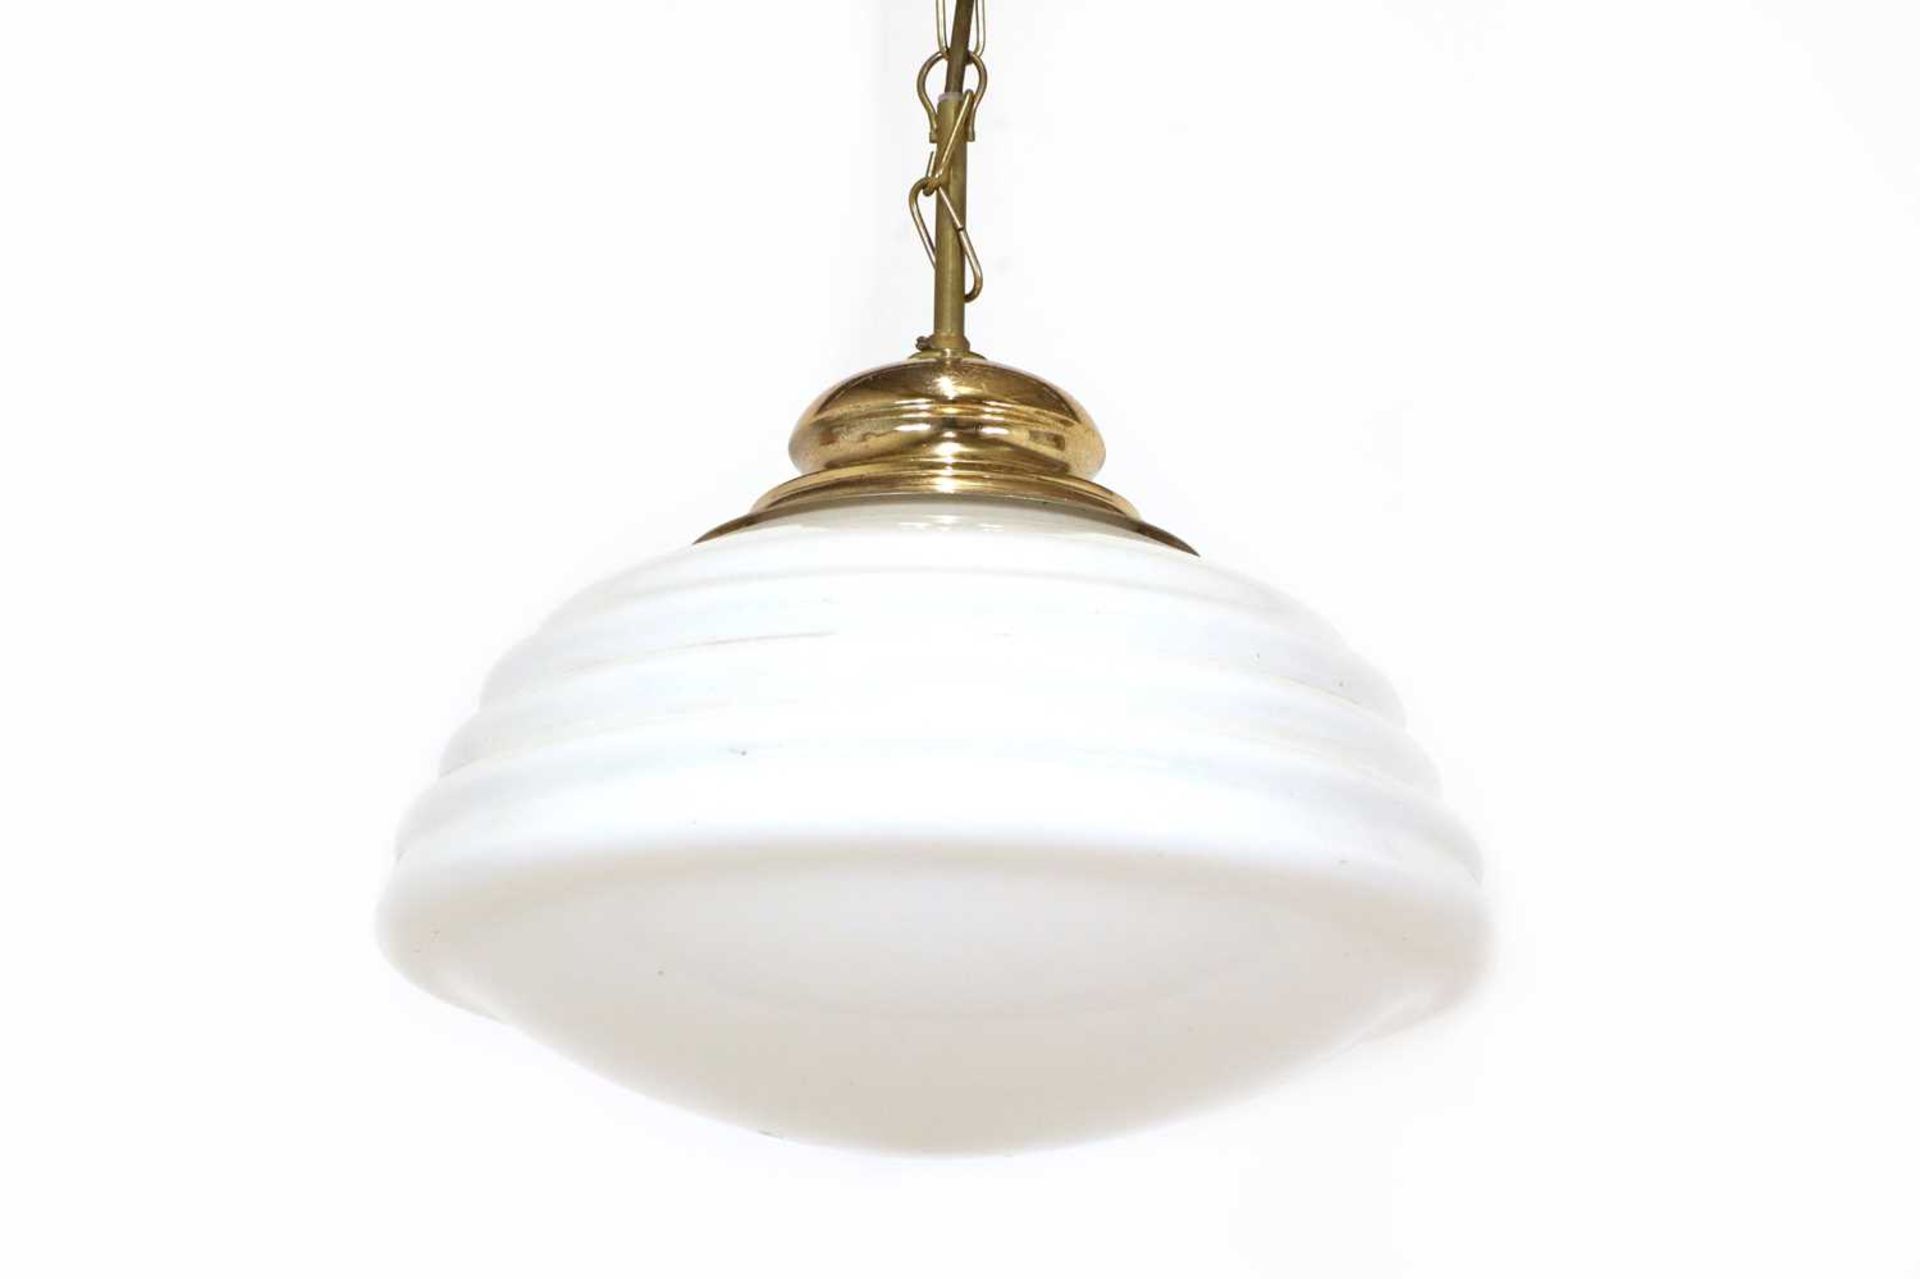 An opaline pendant ceiling light,